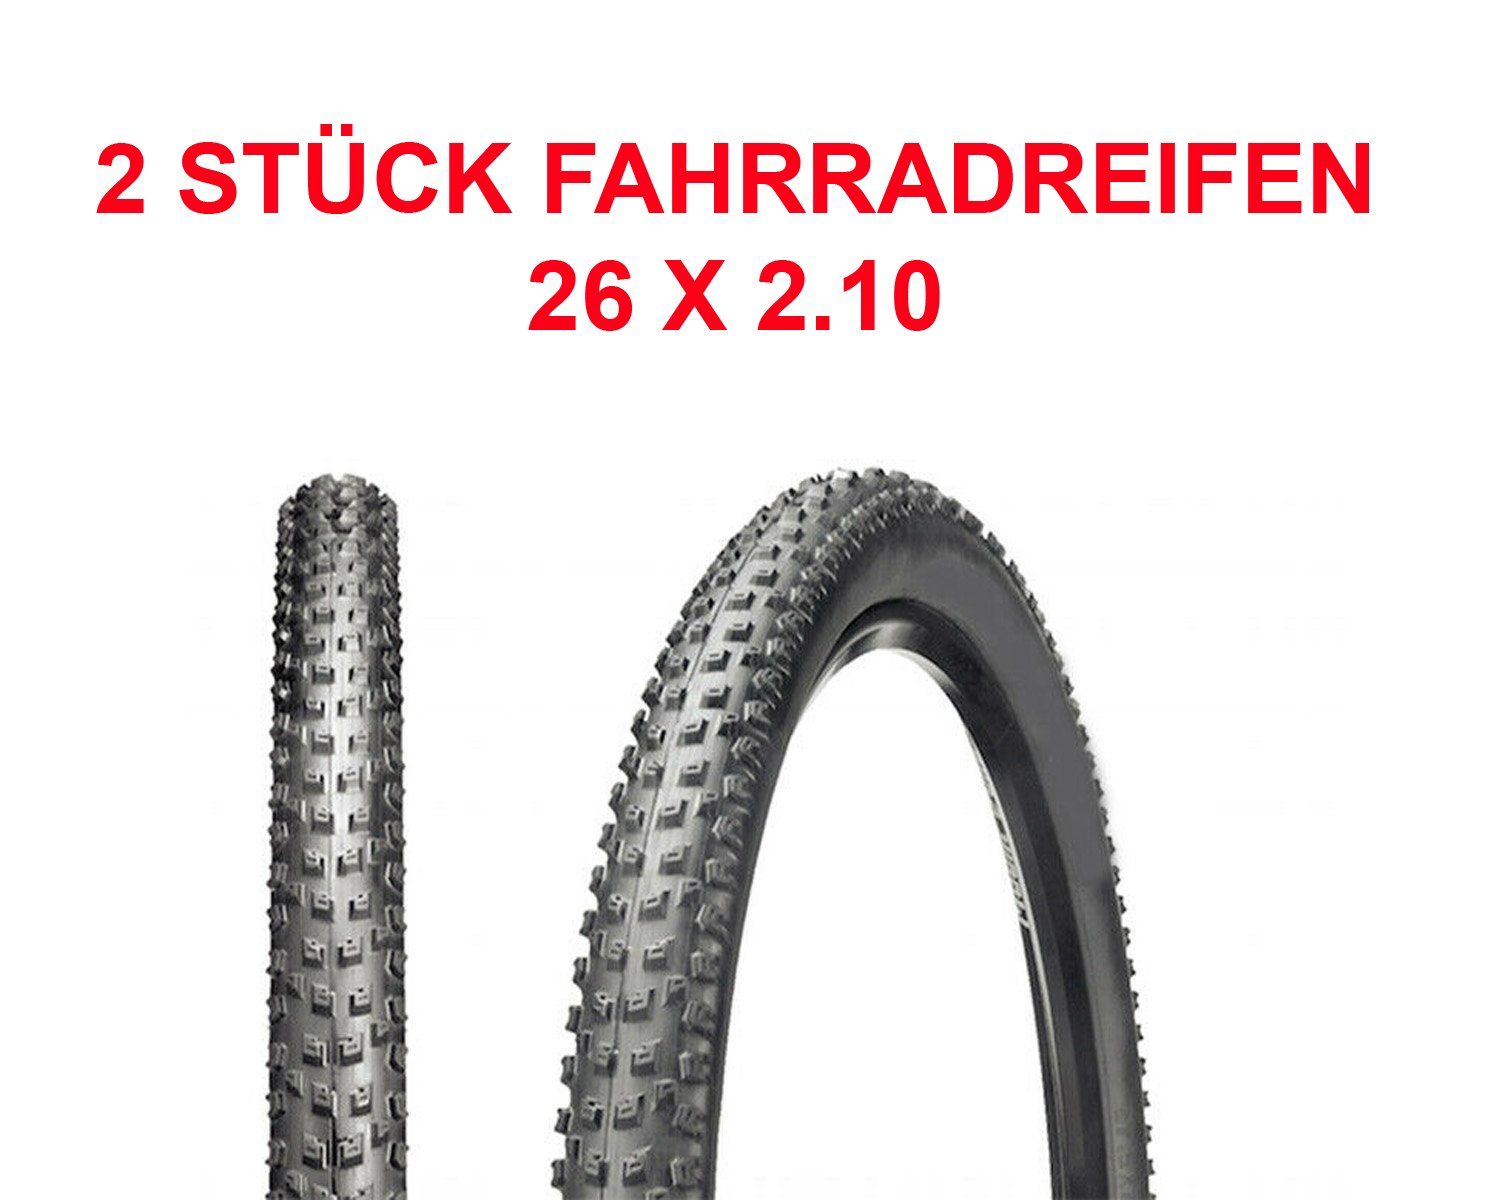 HZRC Fahrradreifen 2x 26 (54-559) Sclaverandventile Mit Decke + Zoll Fahrrad (Set) 2.10 für 26 + x Reifen MTB Mantel Schlauch